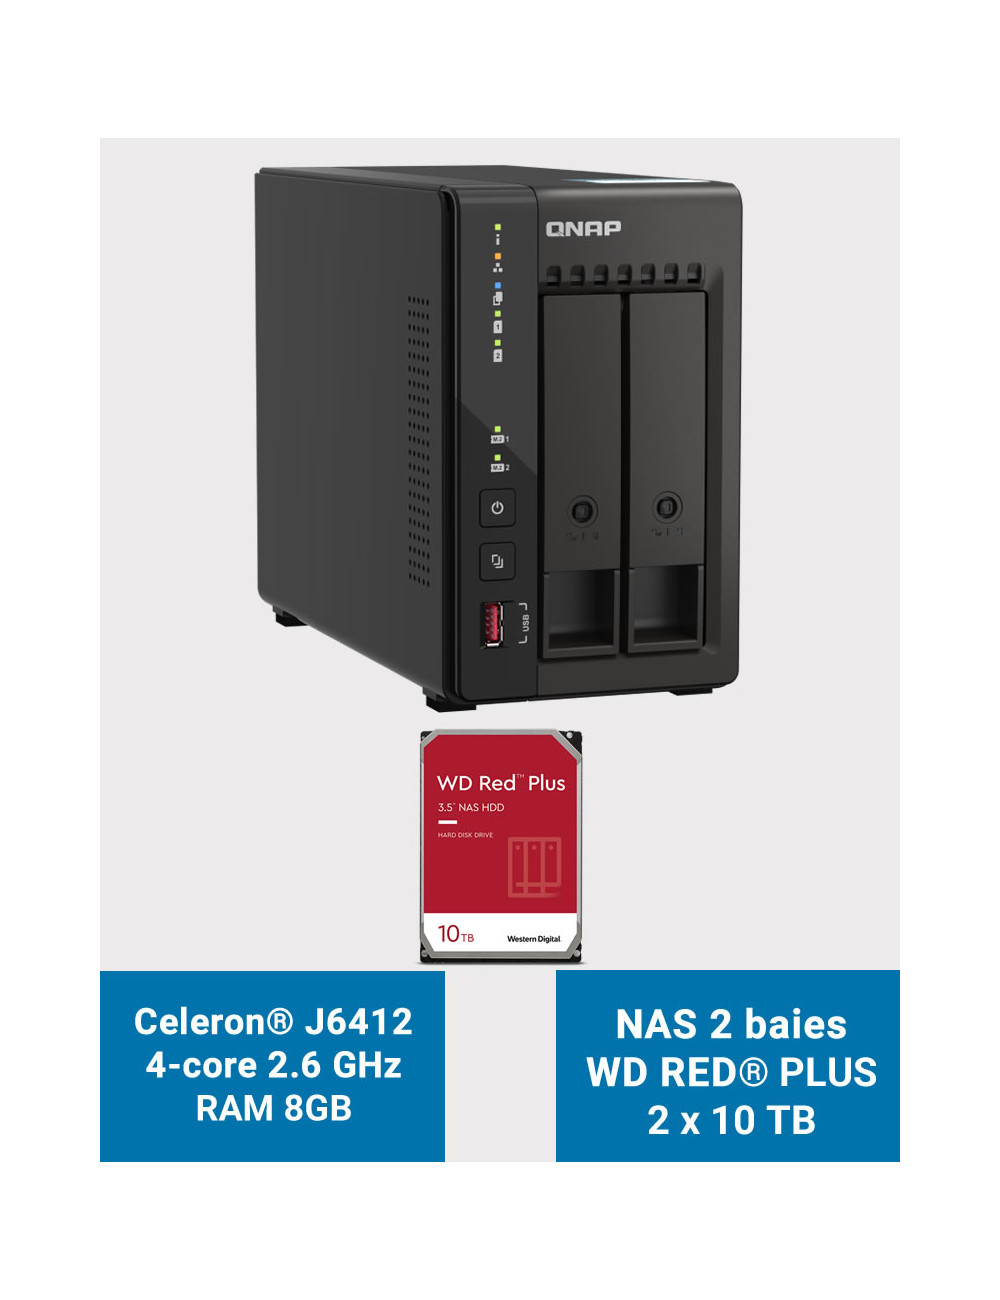 QNAP TS-253E 8GB NAS Server 2 bays WD RED PLUS 20TB (2x10TB)